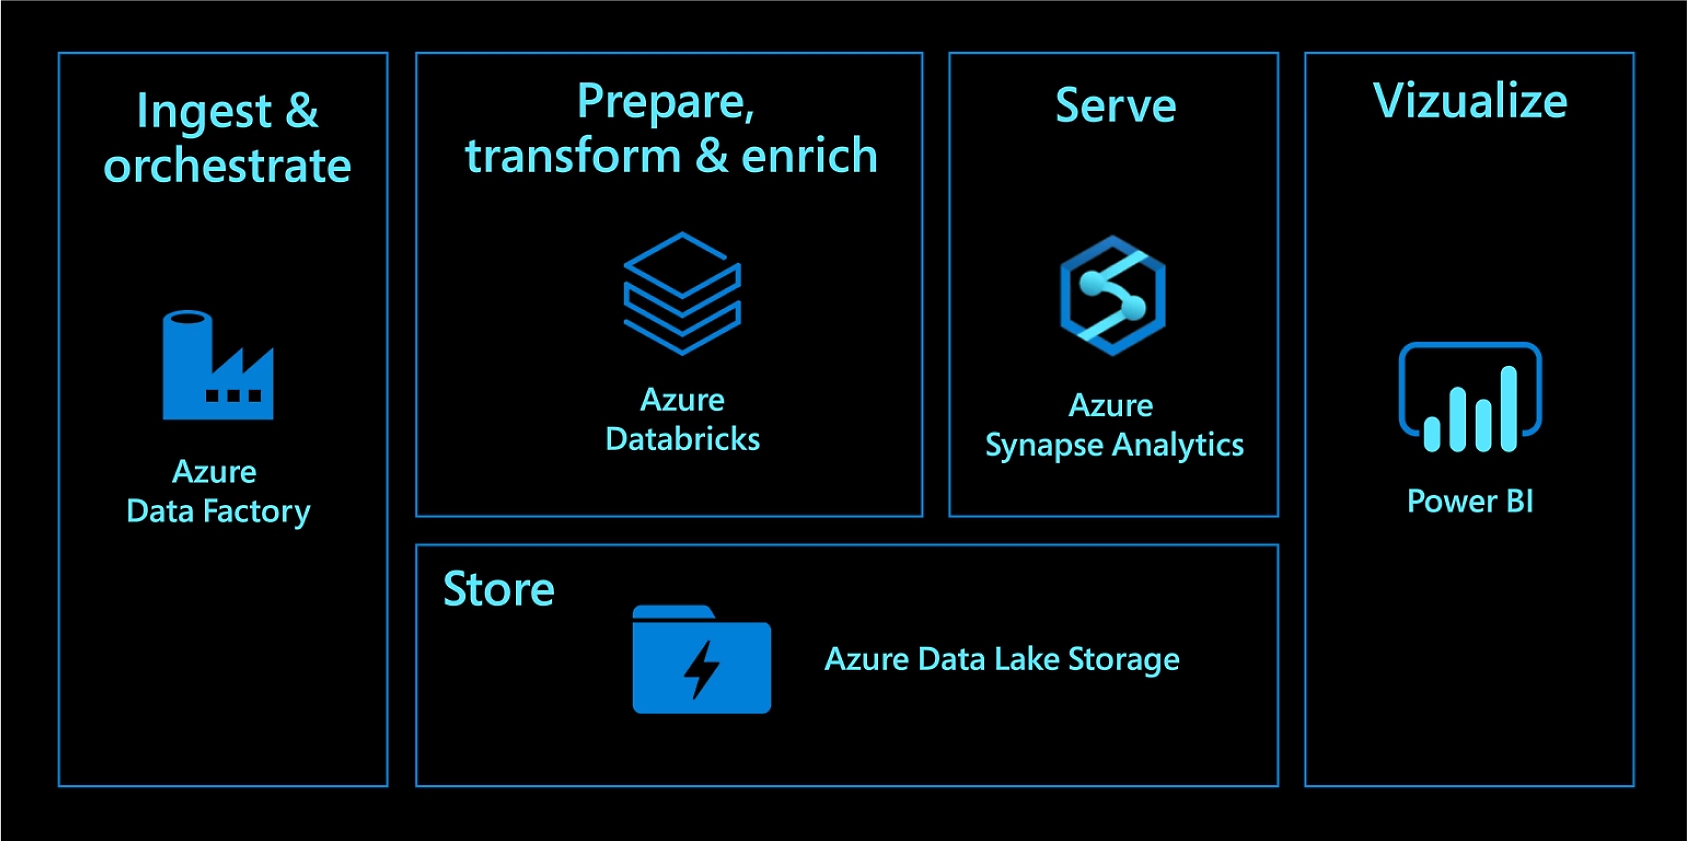 Pomocí služby Azure Data Factory můžete ingestovat a orchestrovat. Pomocí služby Azure Databricks můžete provádět přípravu, transformovat a obohacovat. Pomocí služby Azure Synapse Analytics můžete provádět obsluhu. Pomocí služby Azure Data Lake Storage můžete ukládat. Pomocí Power BI můžete vizualizovat.